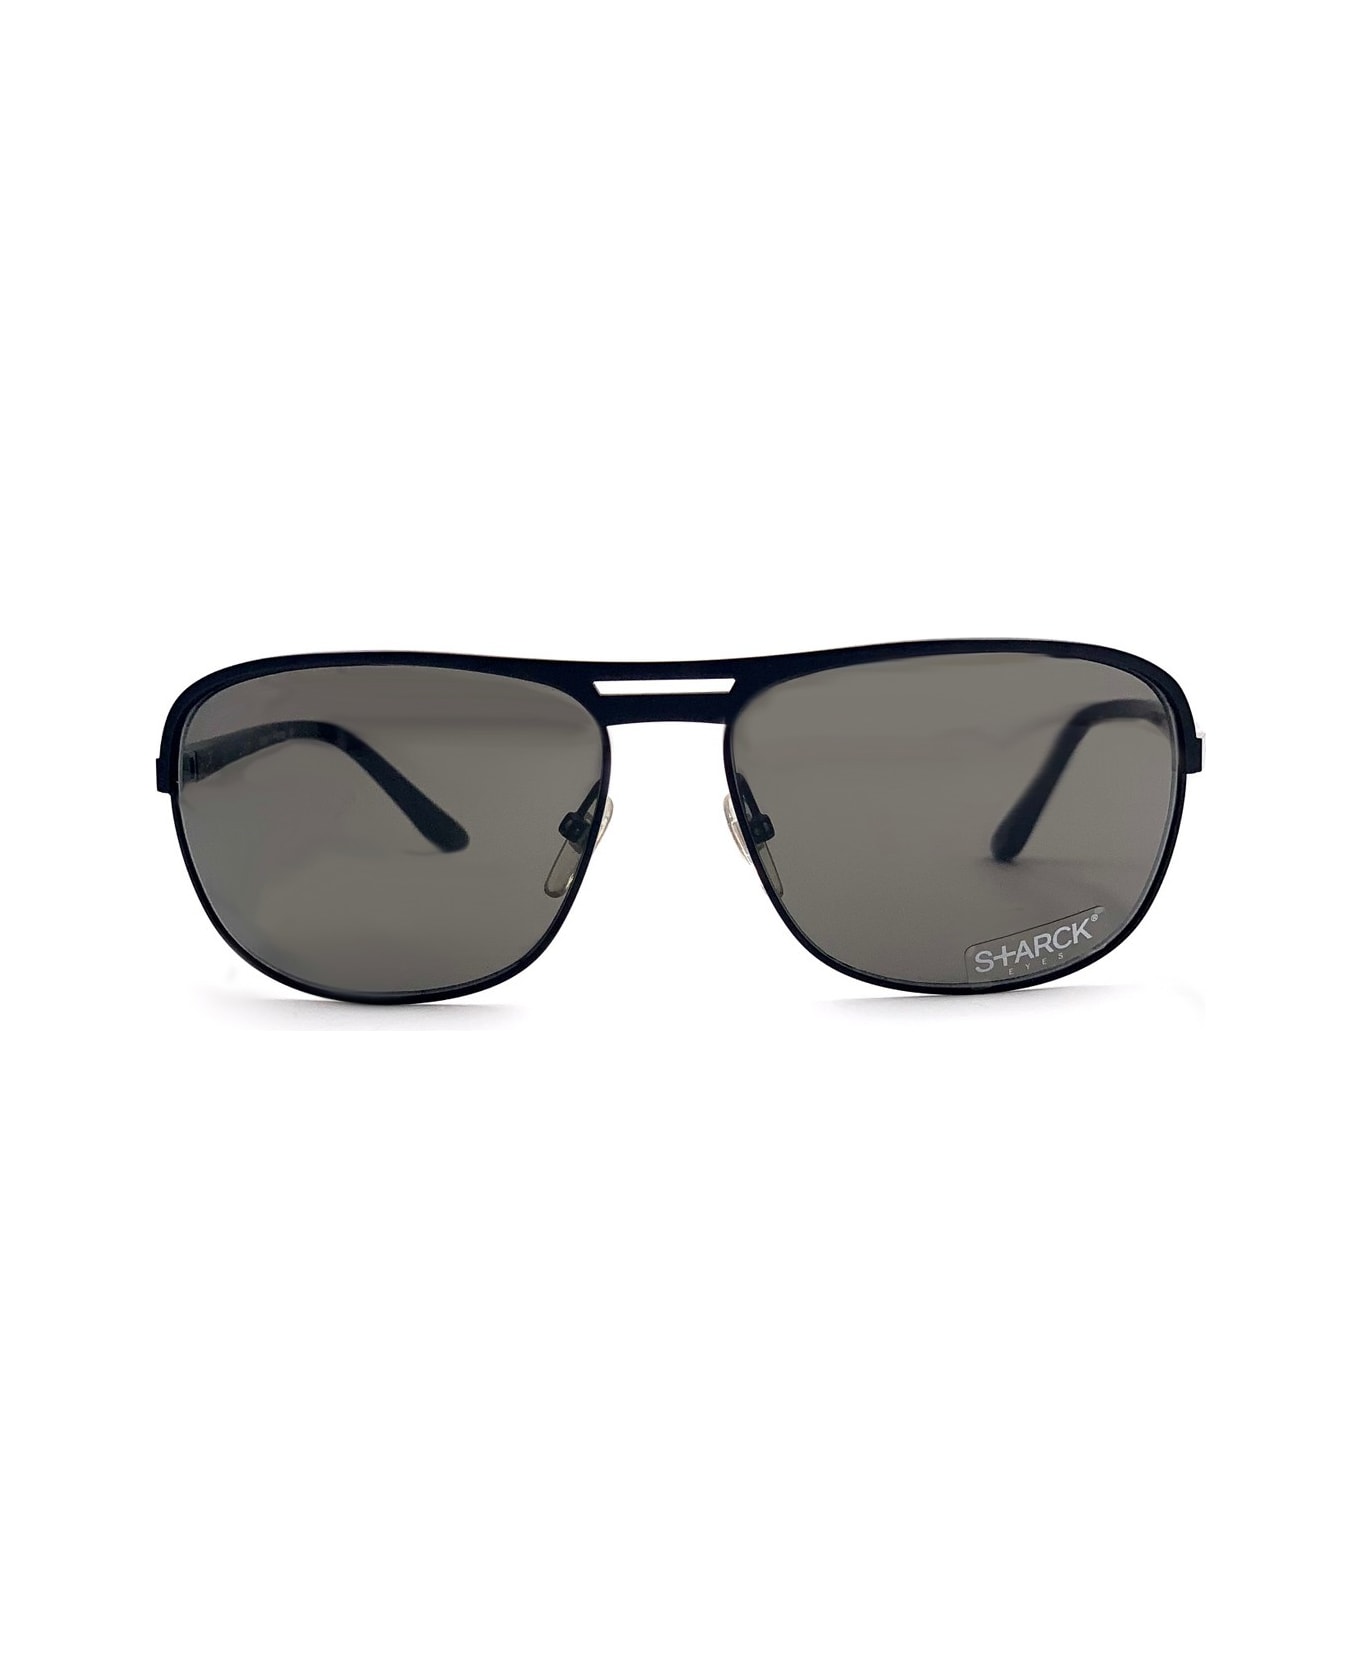 Philippe Starck Starck Pl 1251 Sunglasses - Nero